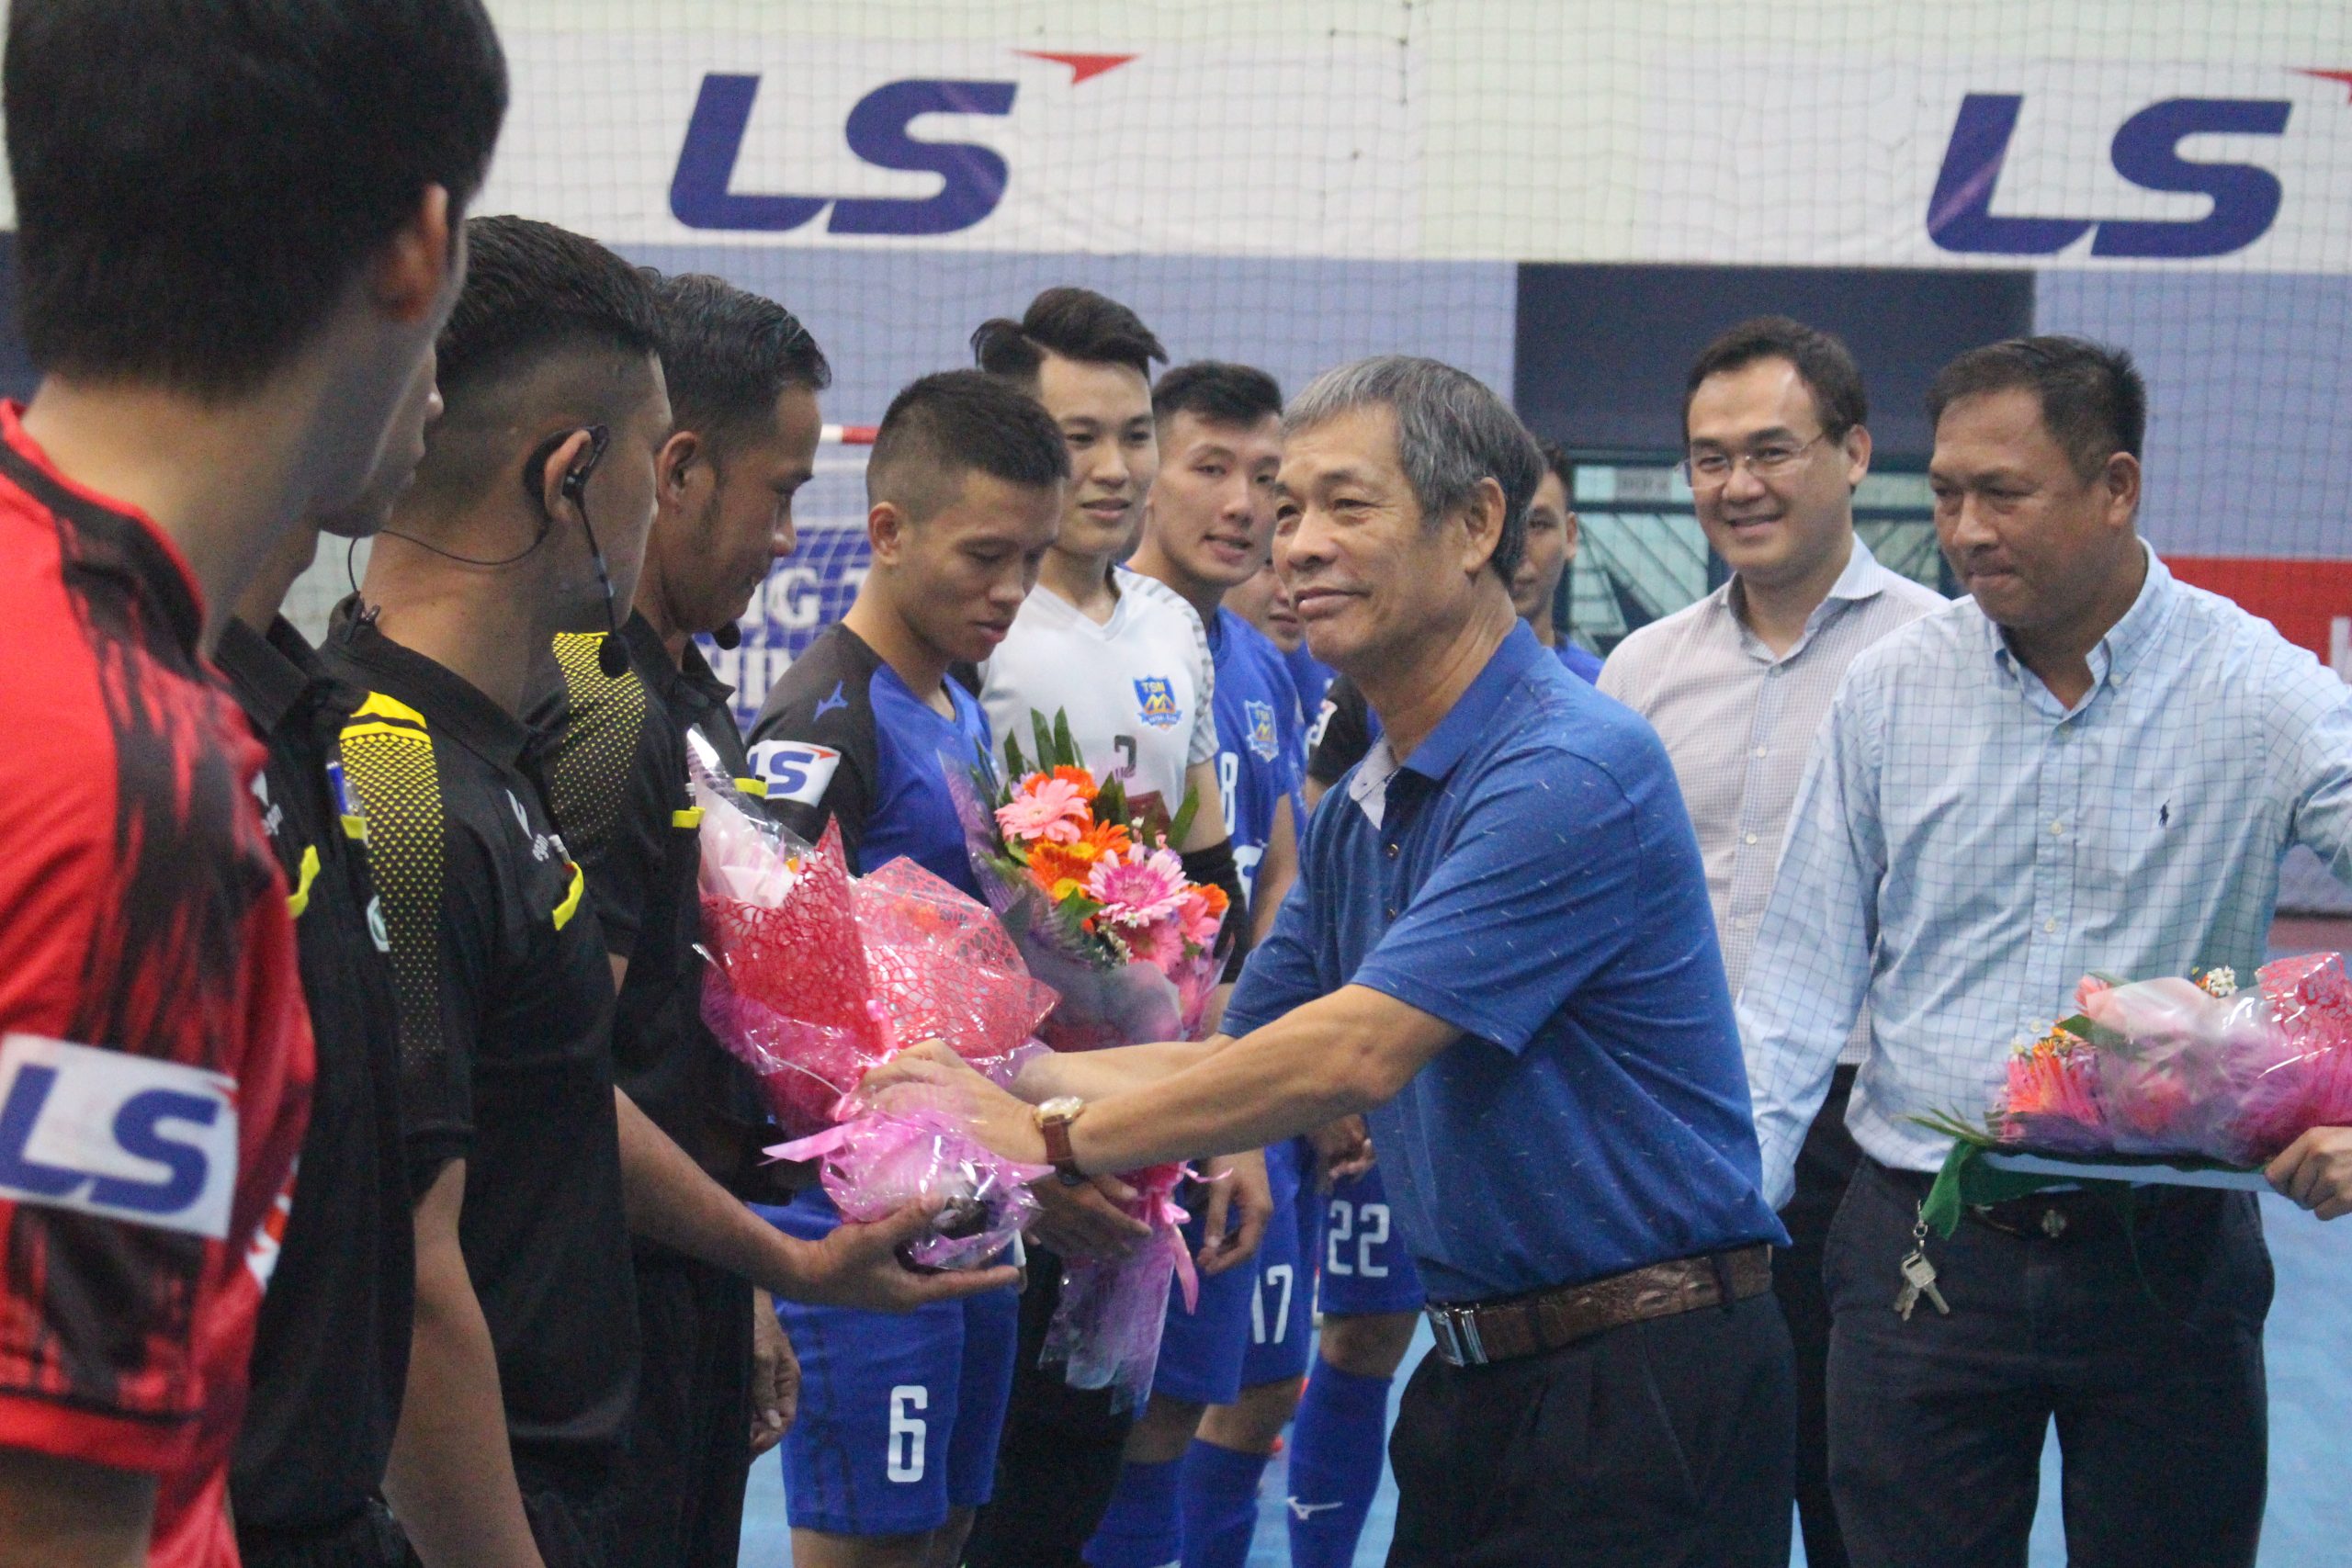 Lễ khai mạc giải Futsal cuối cùng năm 2020 – Cúp LS lần thứ 14